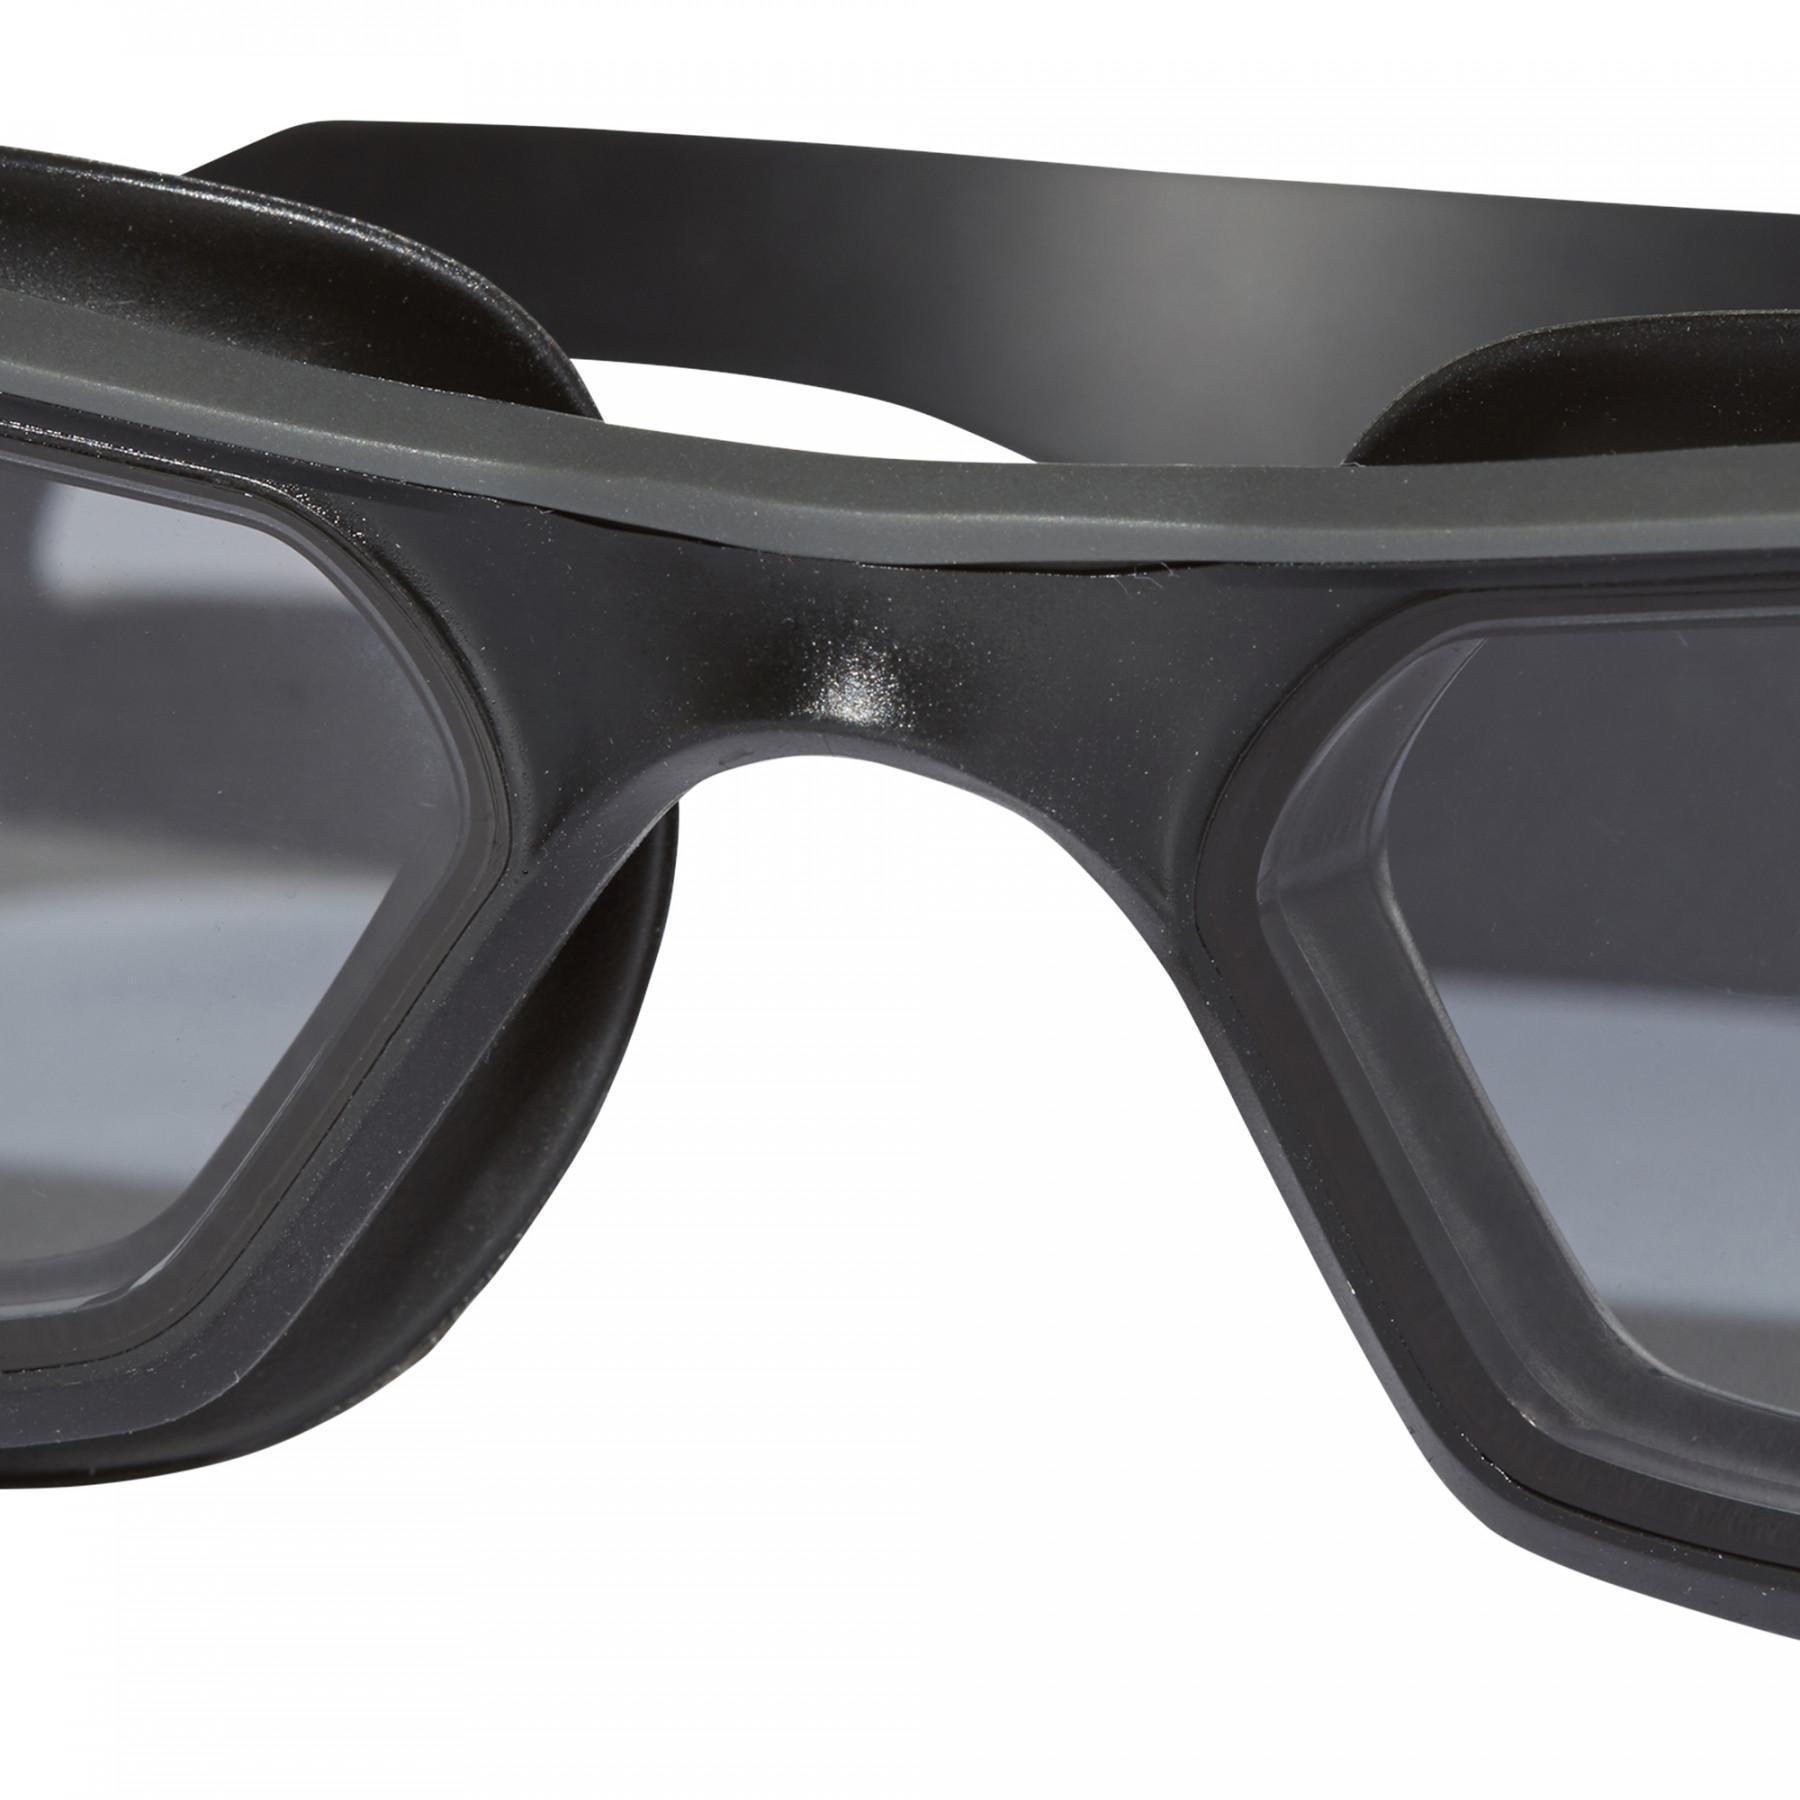 Okulary do pływania dla dzieci adidas Persistar 180 Unmirrored